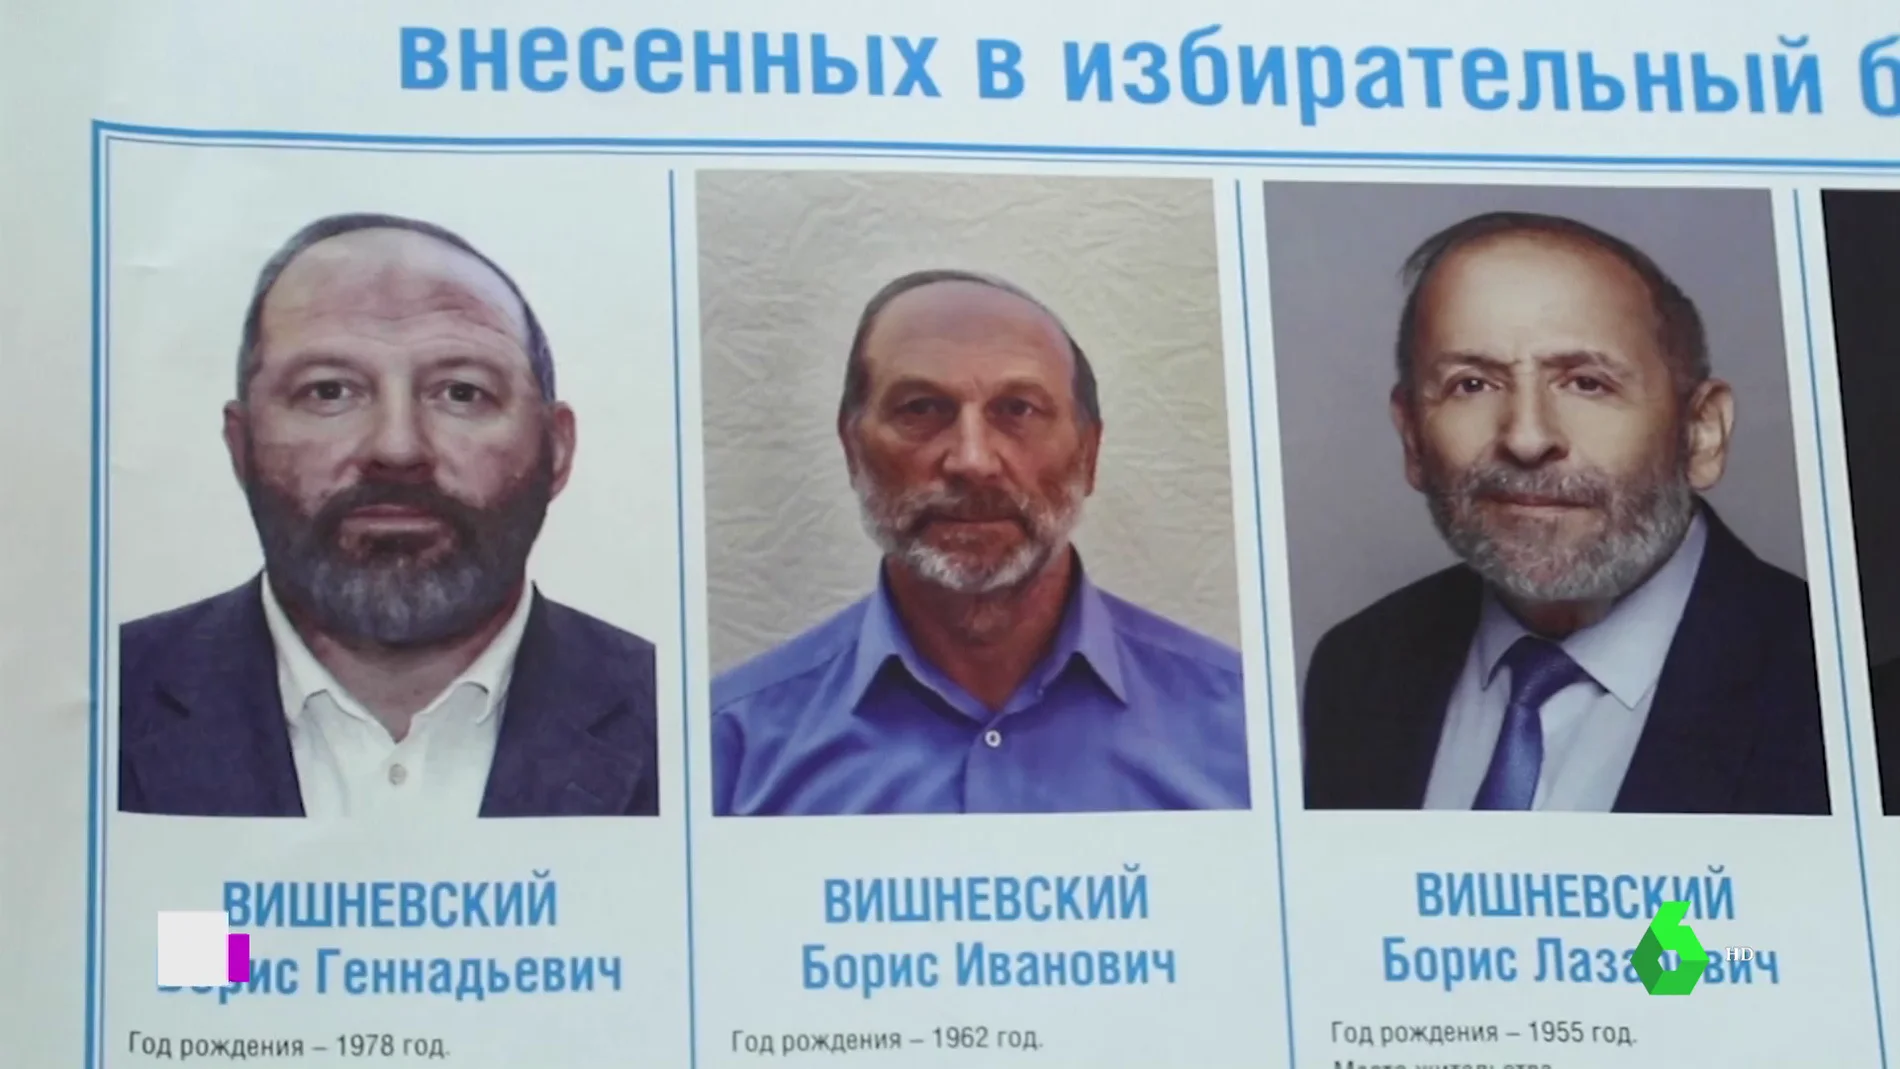 Candidatos 'clonados' en Rusia